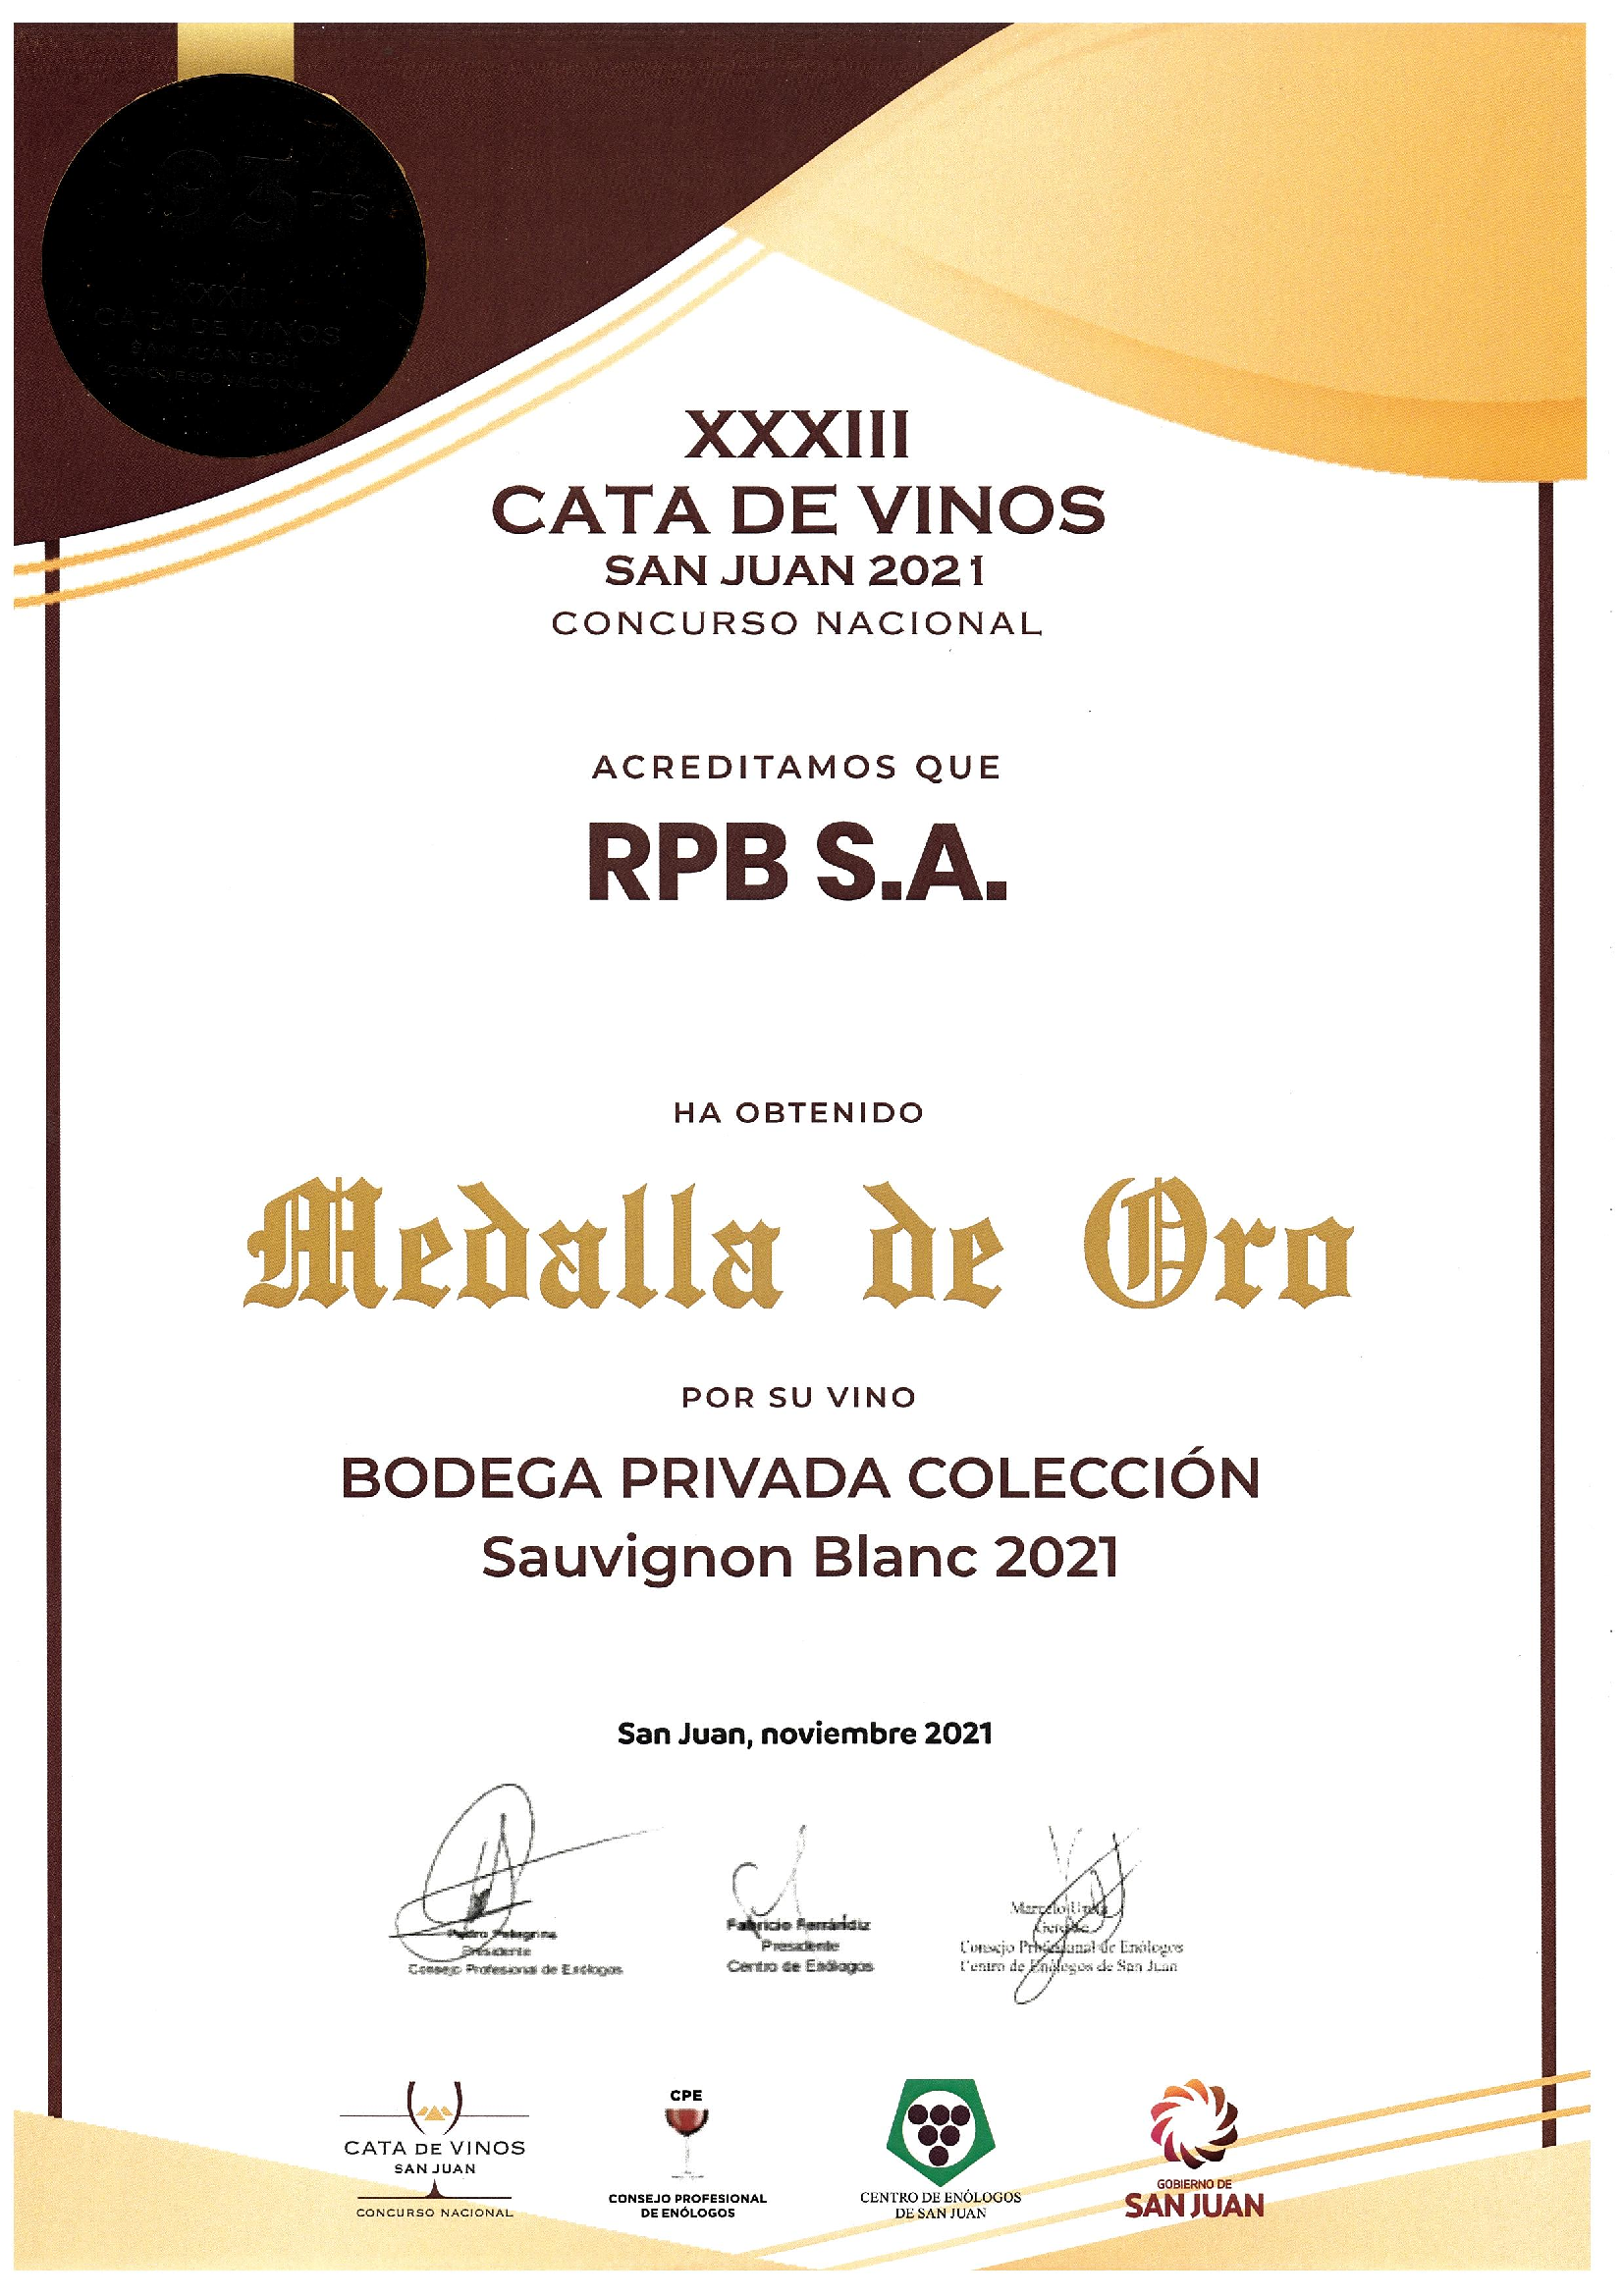 Bodega Privada Colección Sauvignon Blanc 2021